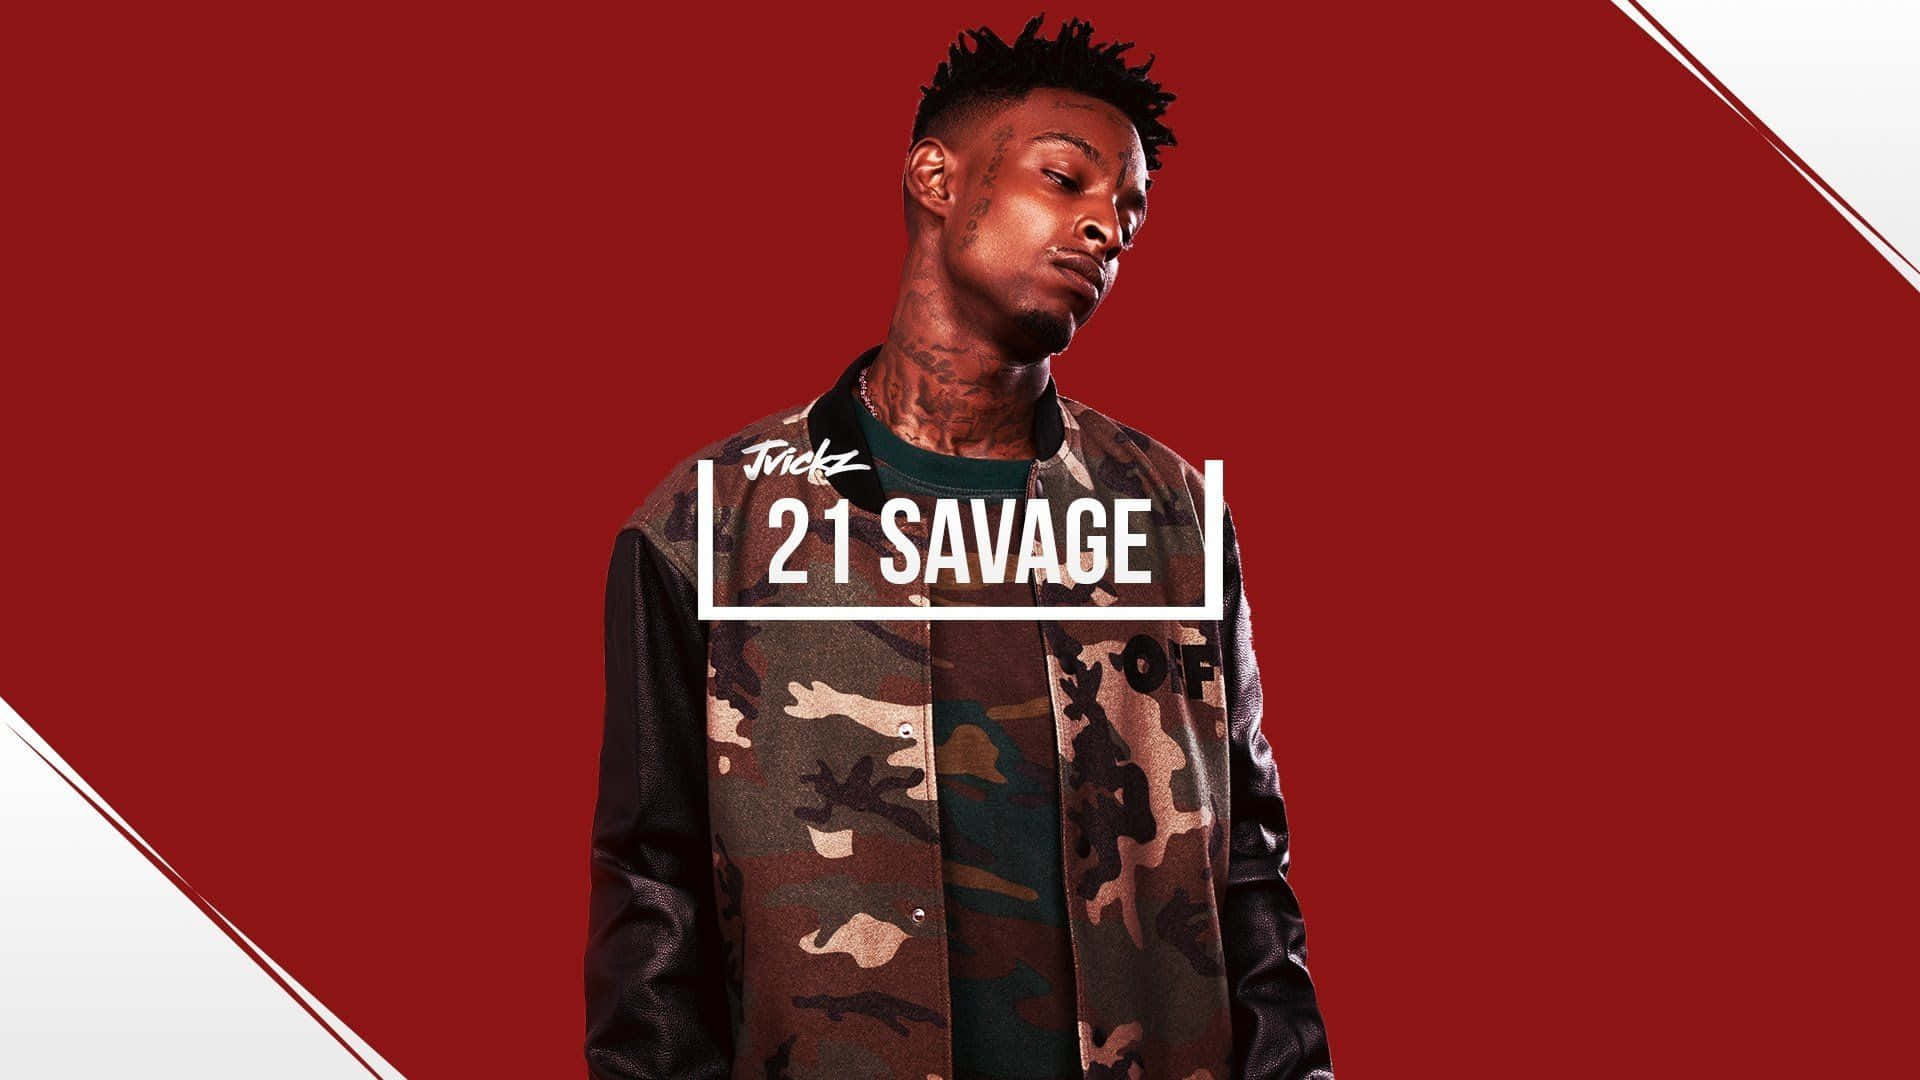 21 Savage Wallpaper  Savage wallpapers, Cute rappers, 21 savage rapper